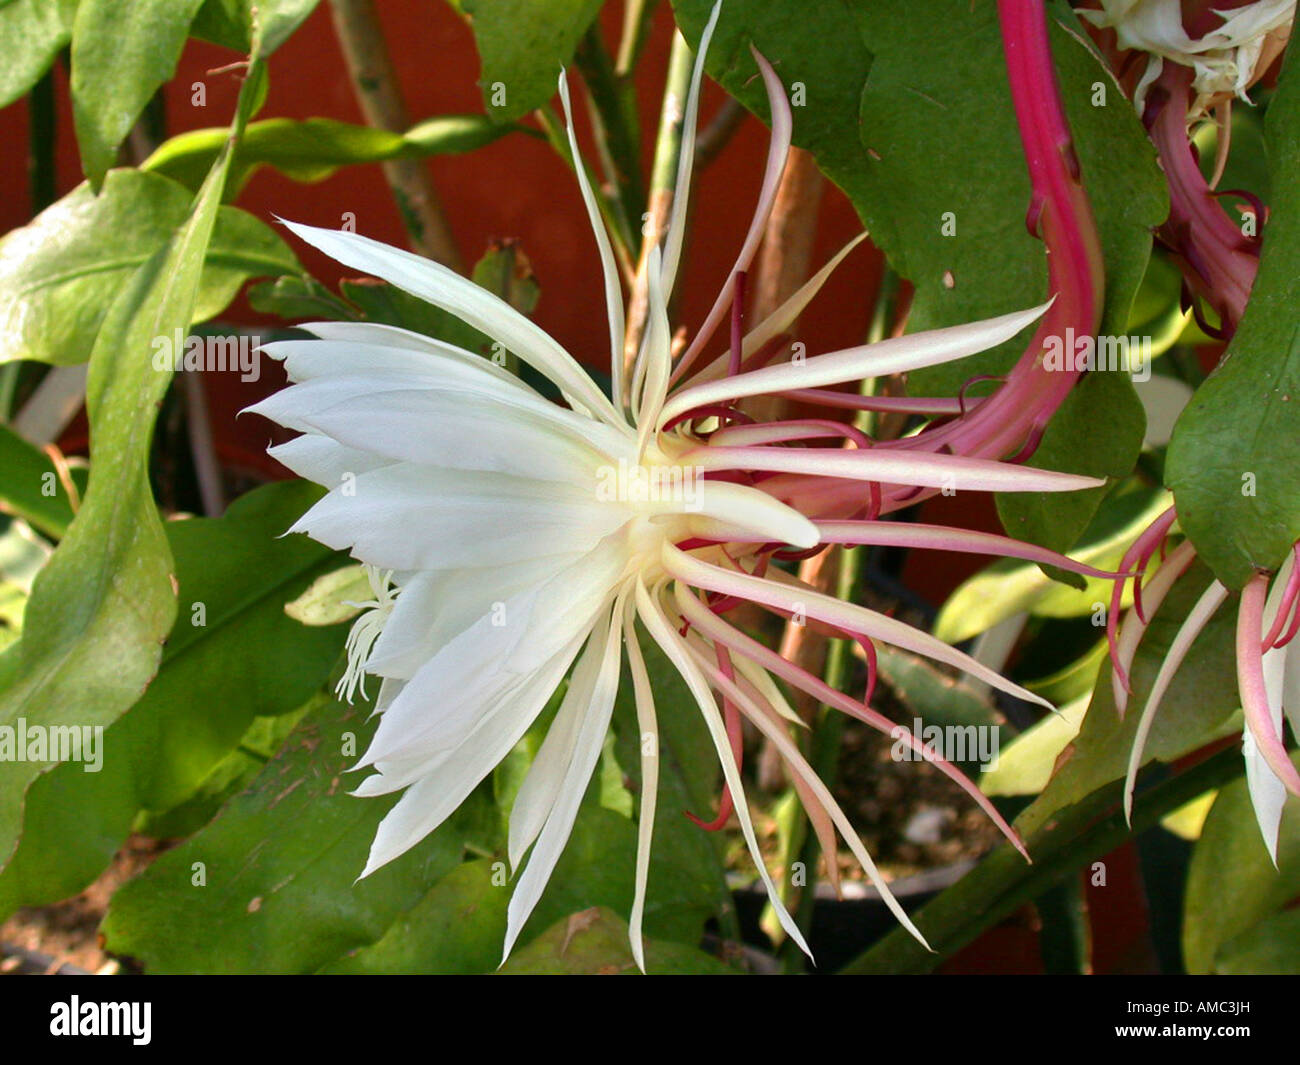 Epiphyllum hybrid (Epiphyllum oxypetalum), flower Stock Photo